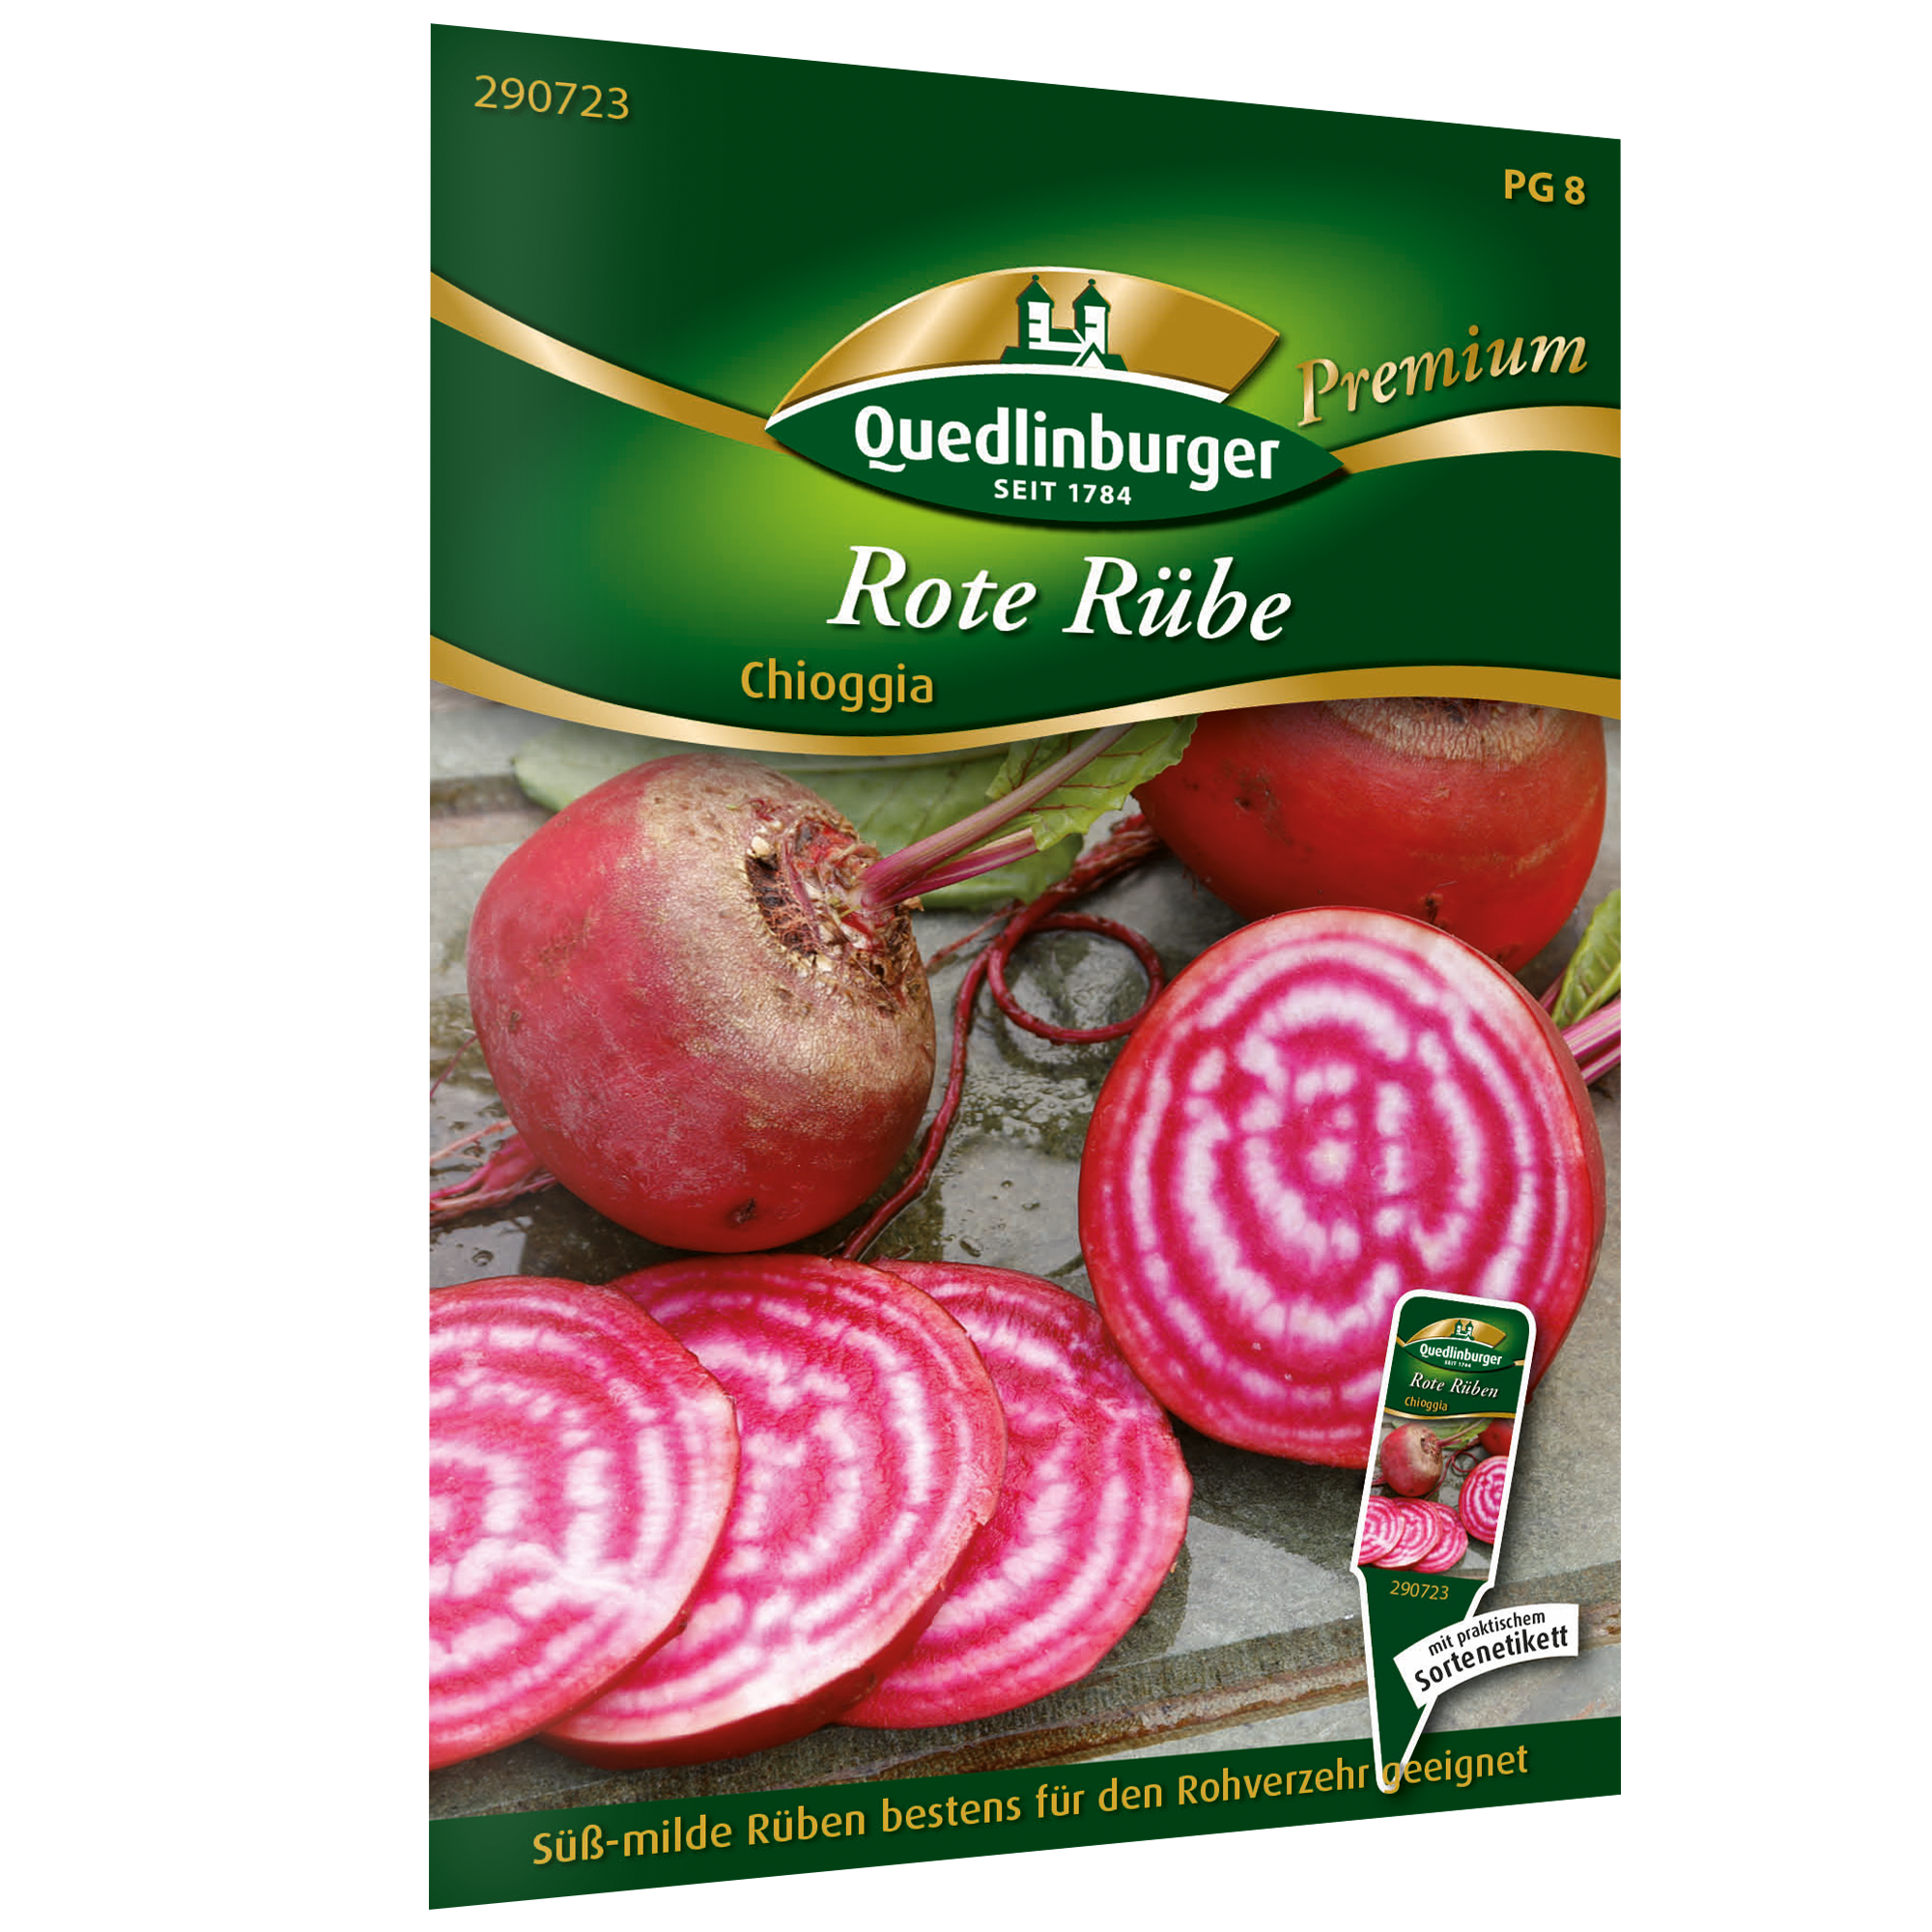 Rote Rübe 'Chioggia' + product picture